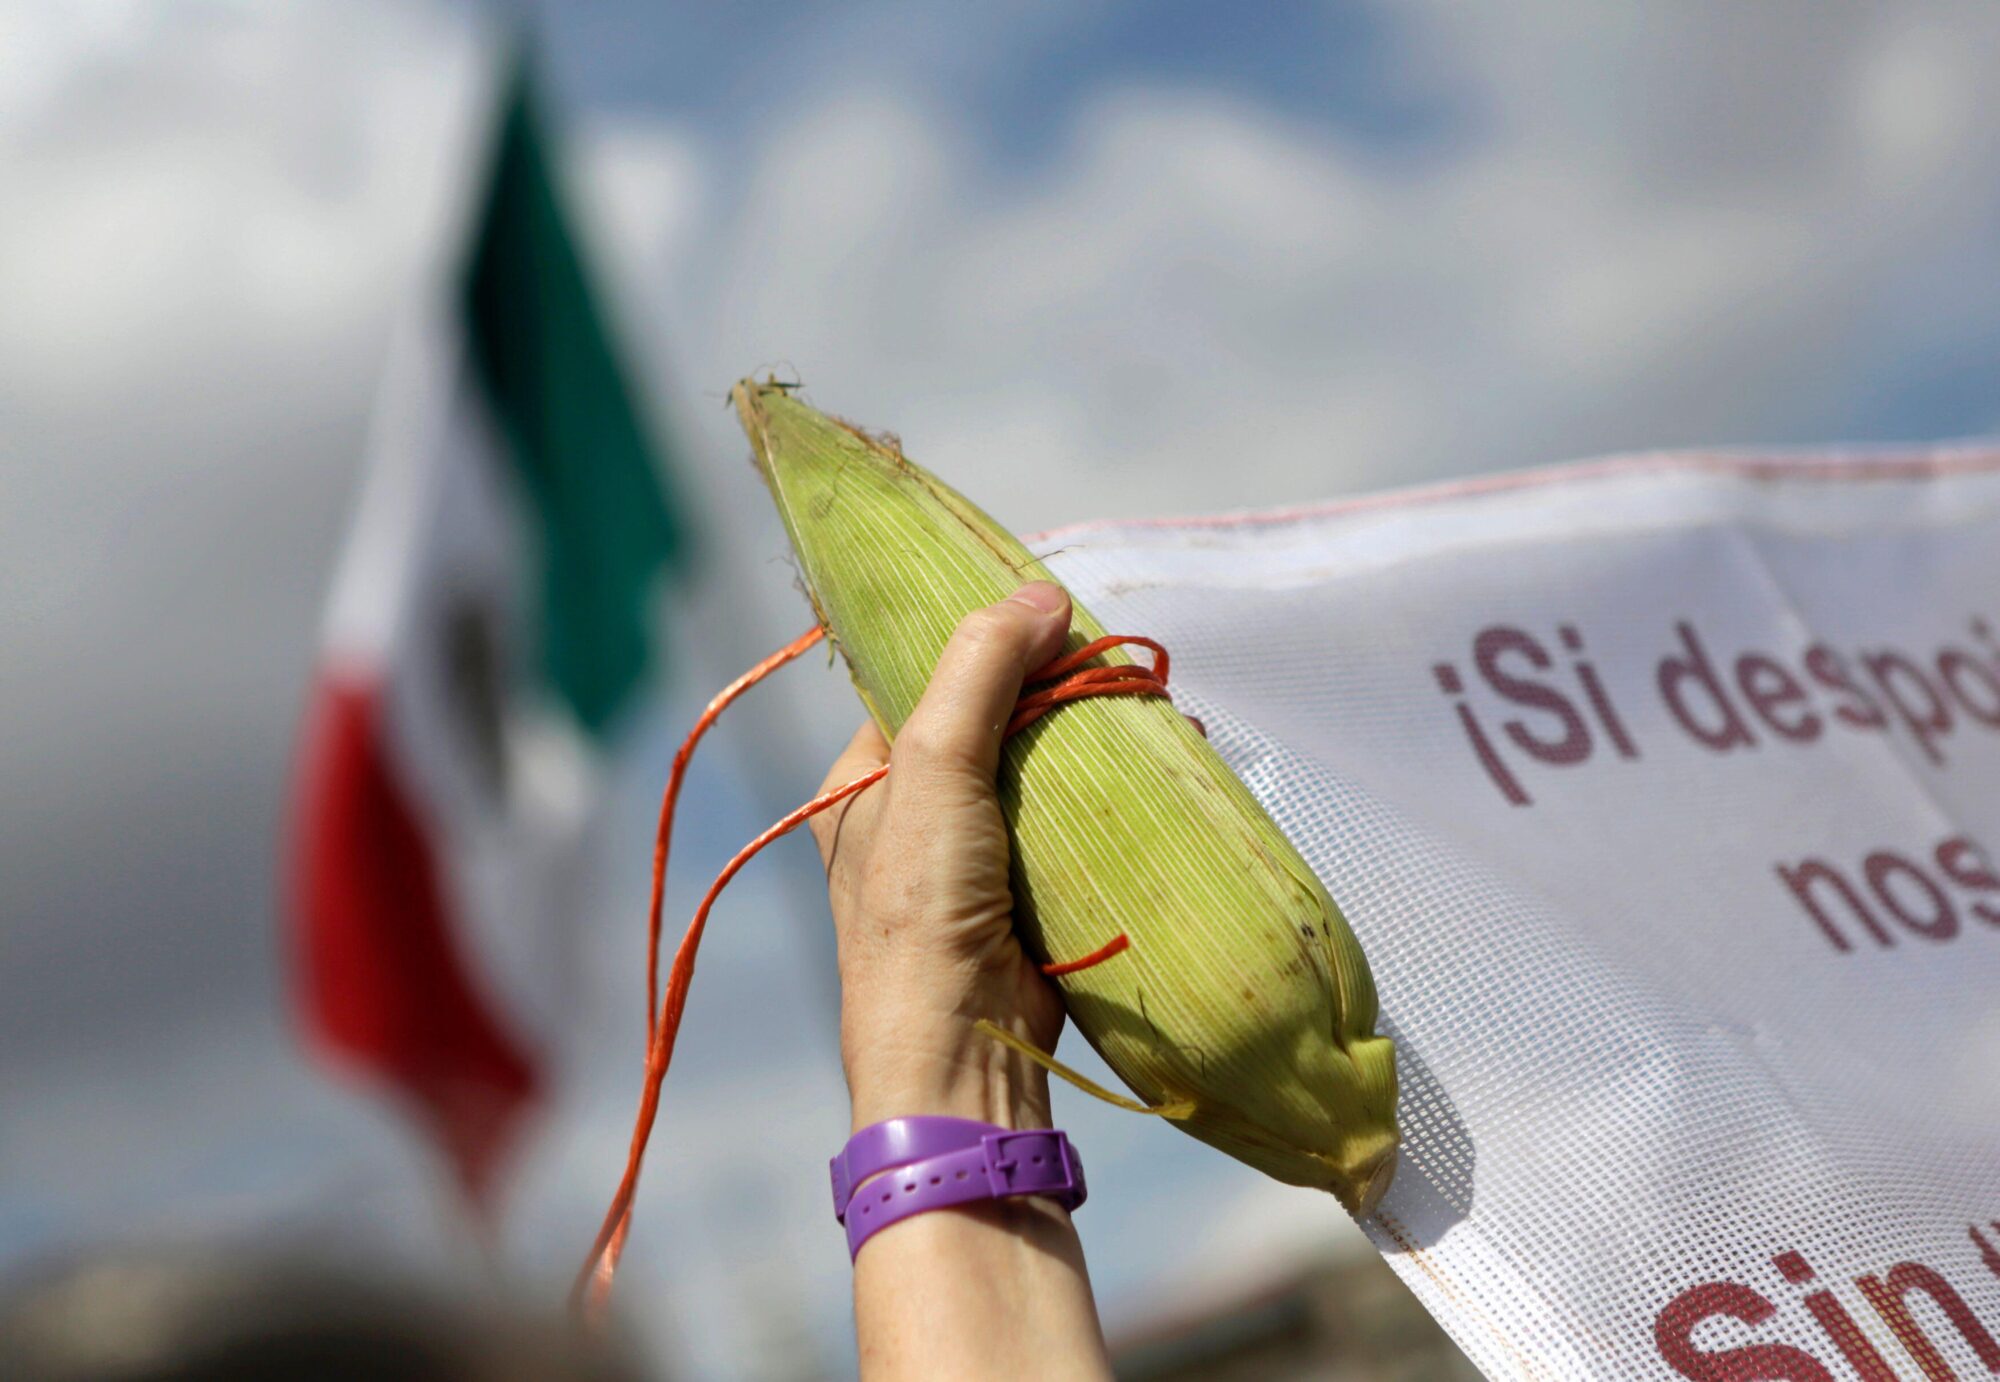 <p>Manifestante segura uma espiga de milho em um protesto contra a Monsanto na Cidade do México em 2014, liderado pela campanha &#8216;Sin Maíz No Hay Pais&#8217;. As culturas geneticamente modificadas (GM) têm sido uma questão controversa no México, e recentemente o governo demonstrou apoio ao movimento anti-GM. (Imagem: Henry Romero / Alamy)</p>